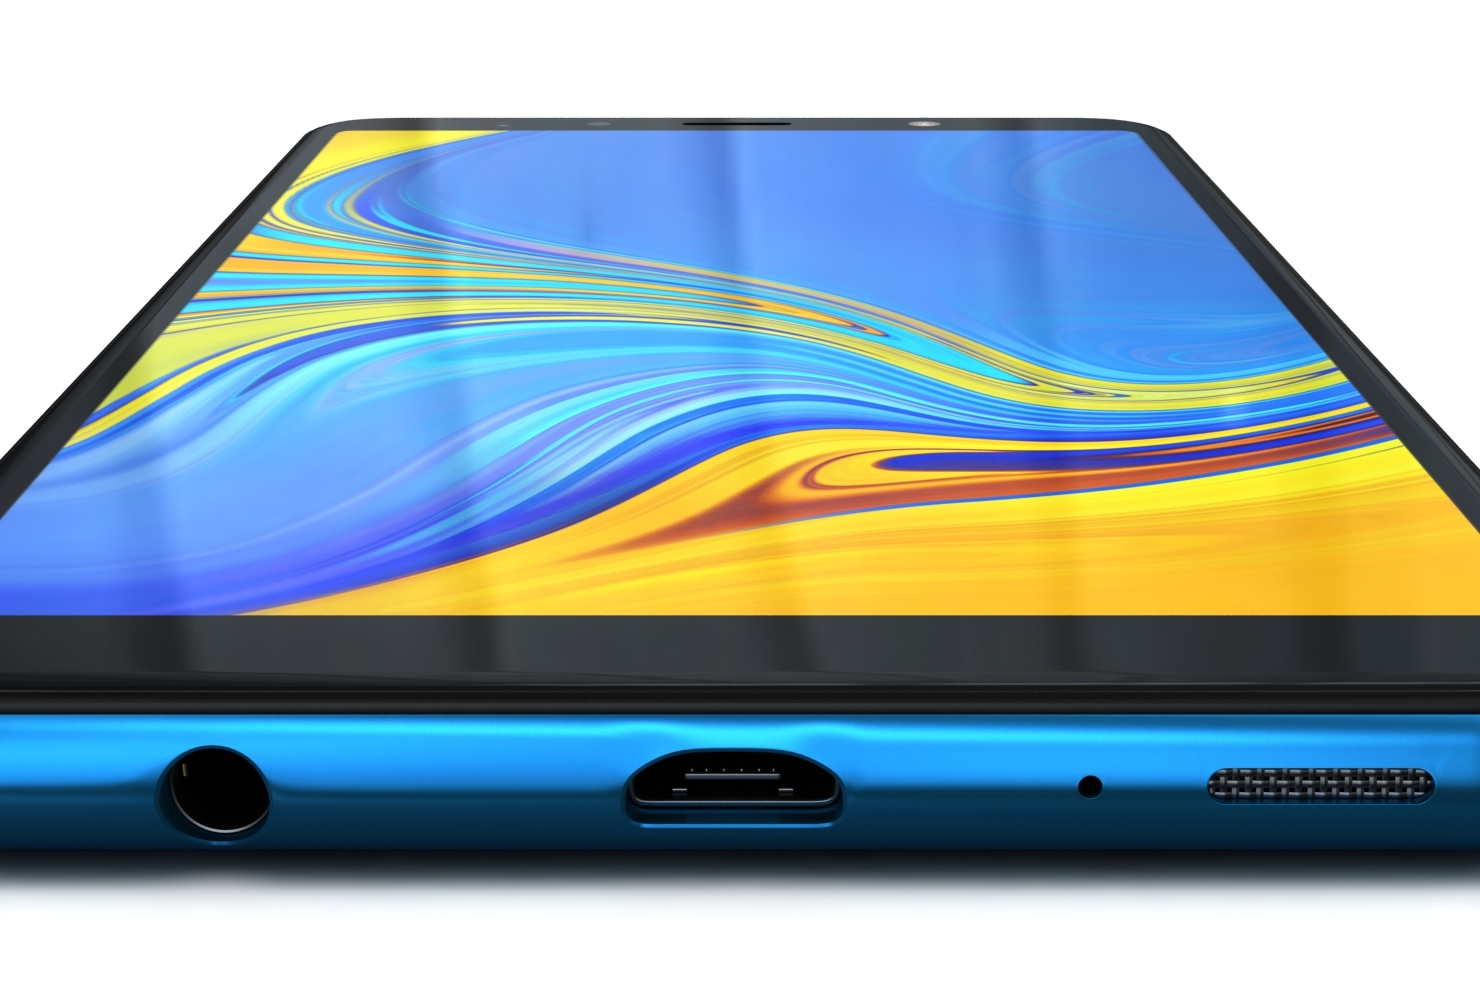 Samsung Galaxy A7 zostanie oficjalnie zaprezentowany już 14 stycznia